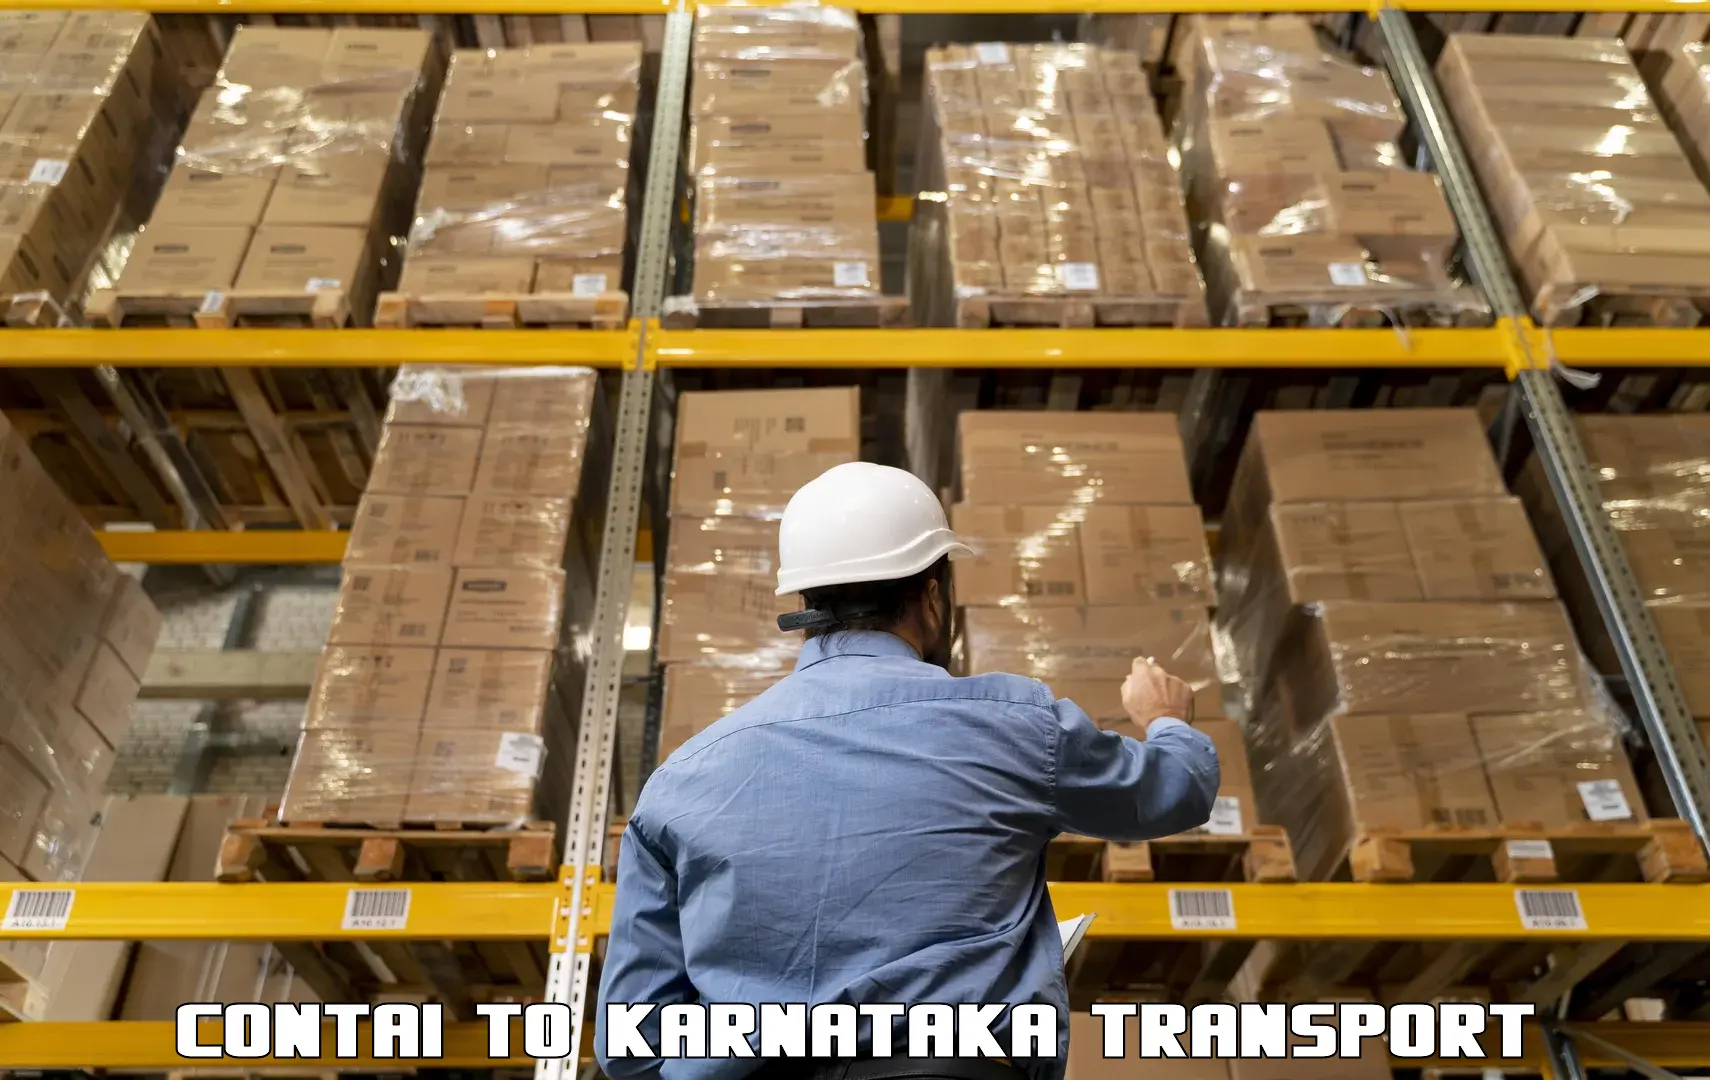 Lorry transport service Contai to Karkala